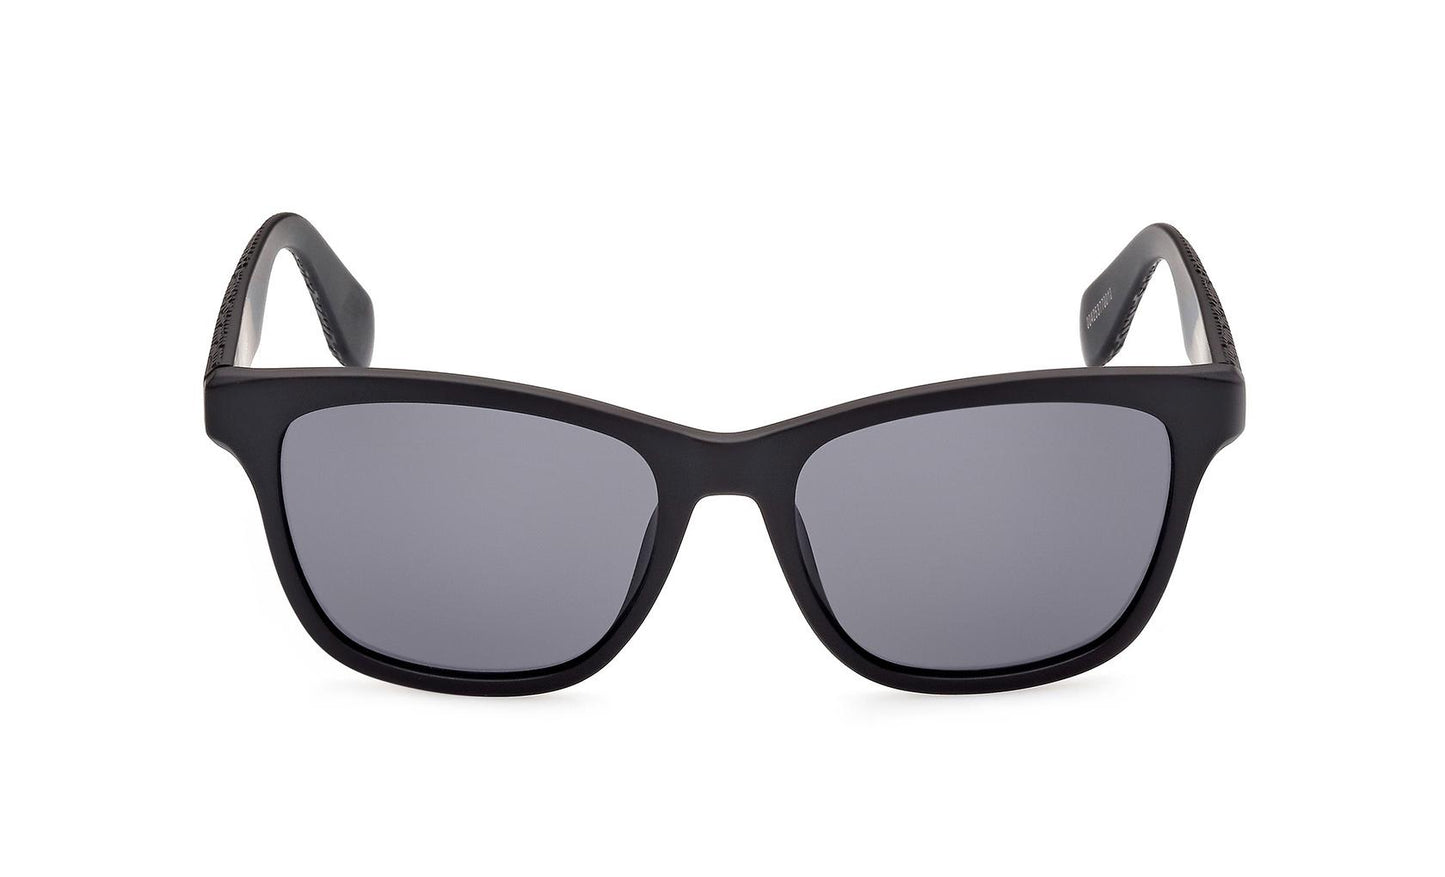 Adidas Originals Sunglasses OR0069 02A